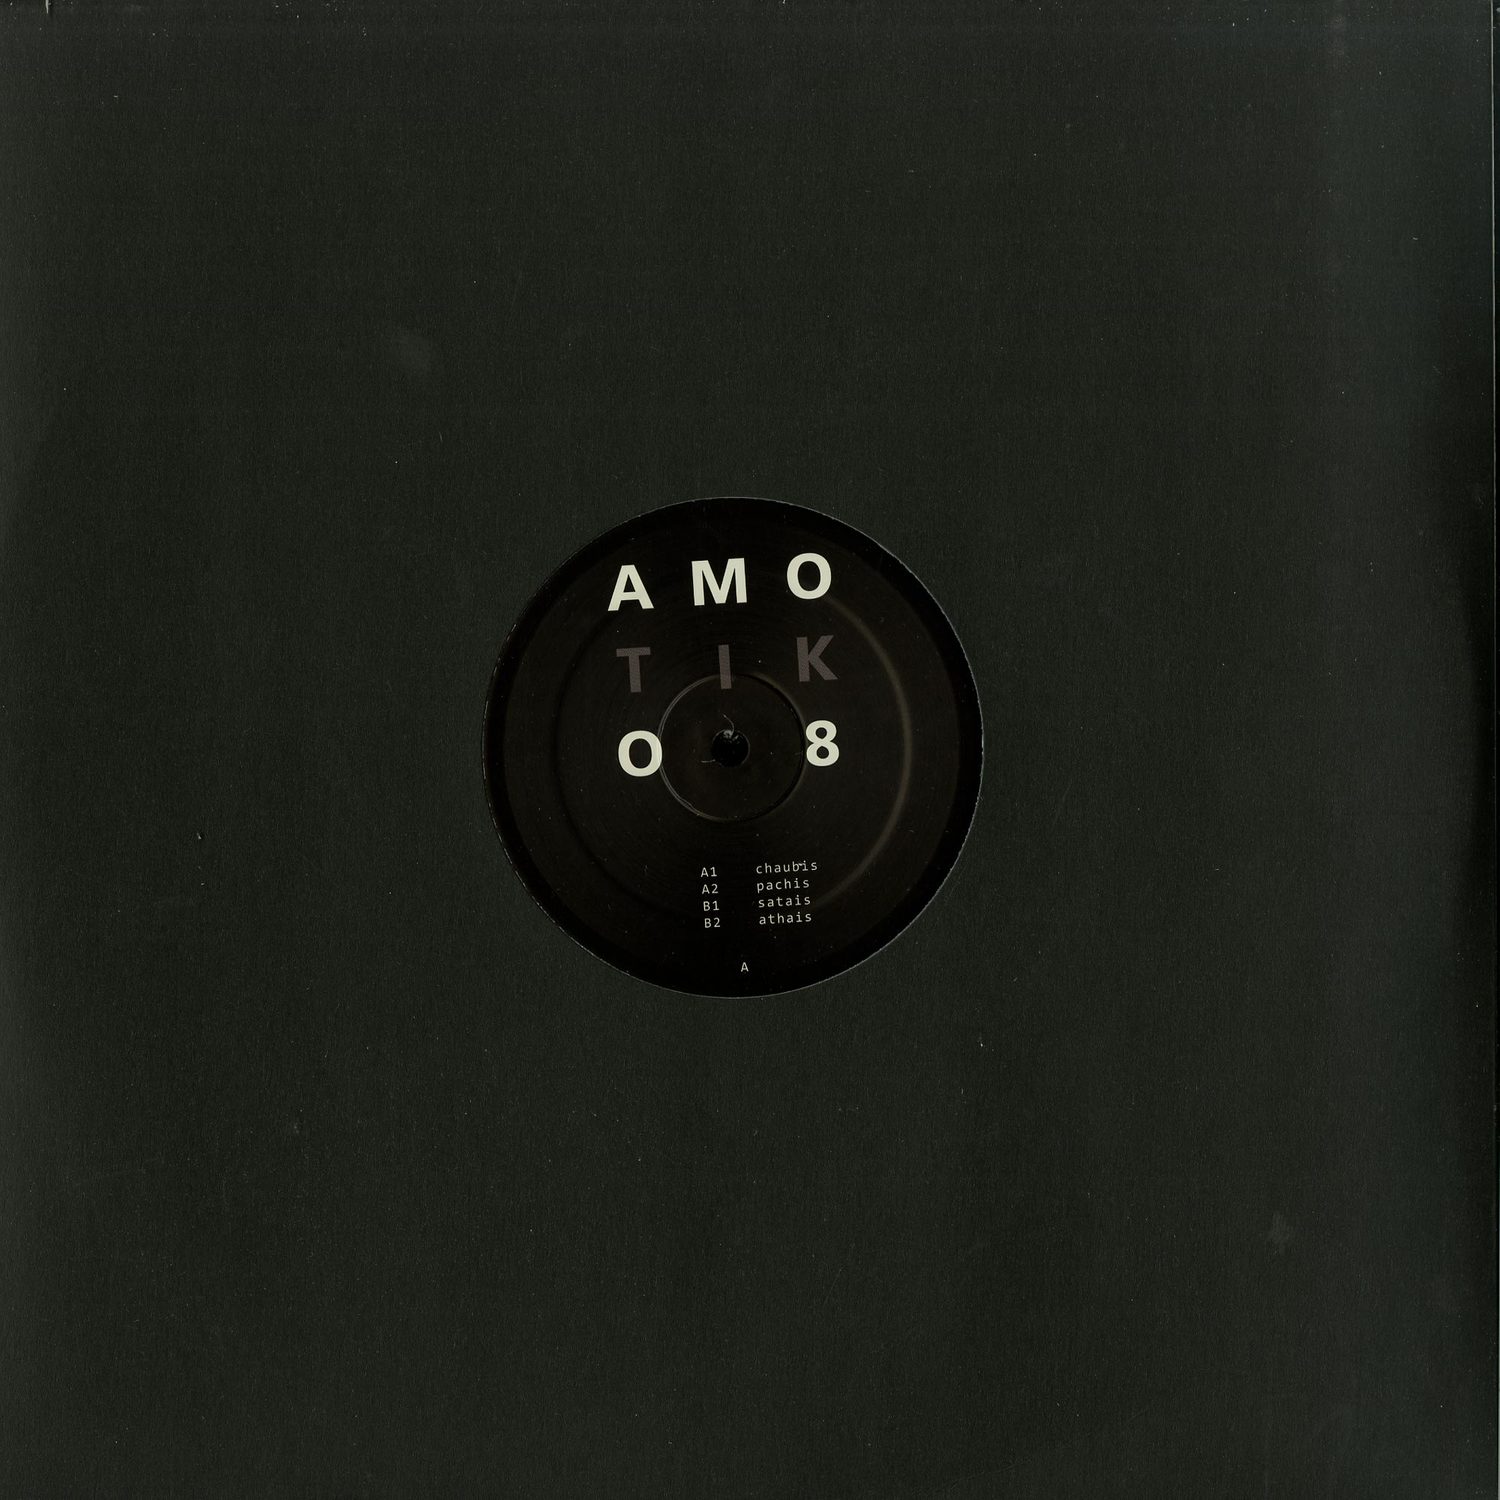 Amotik - AMOTIK 008